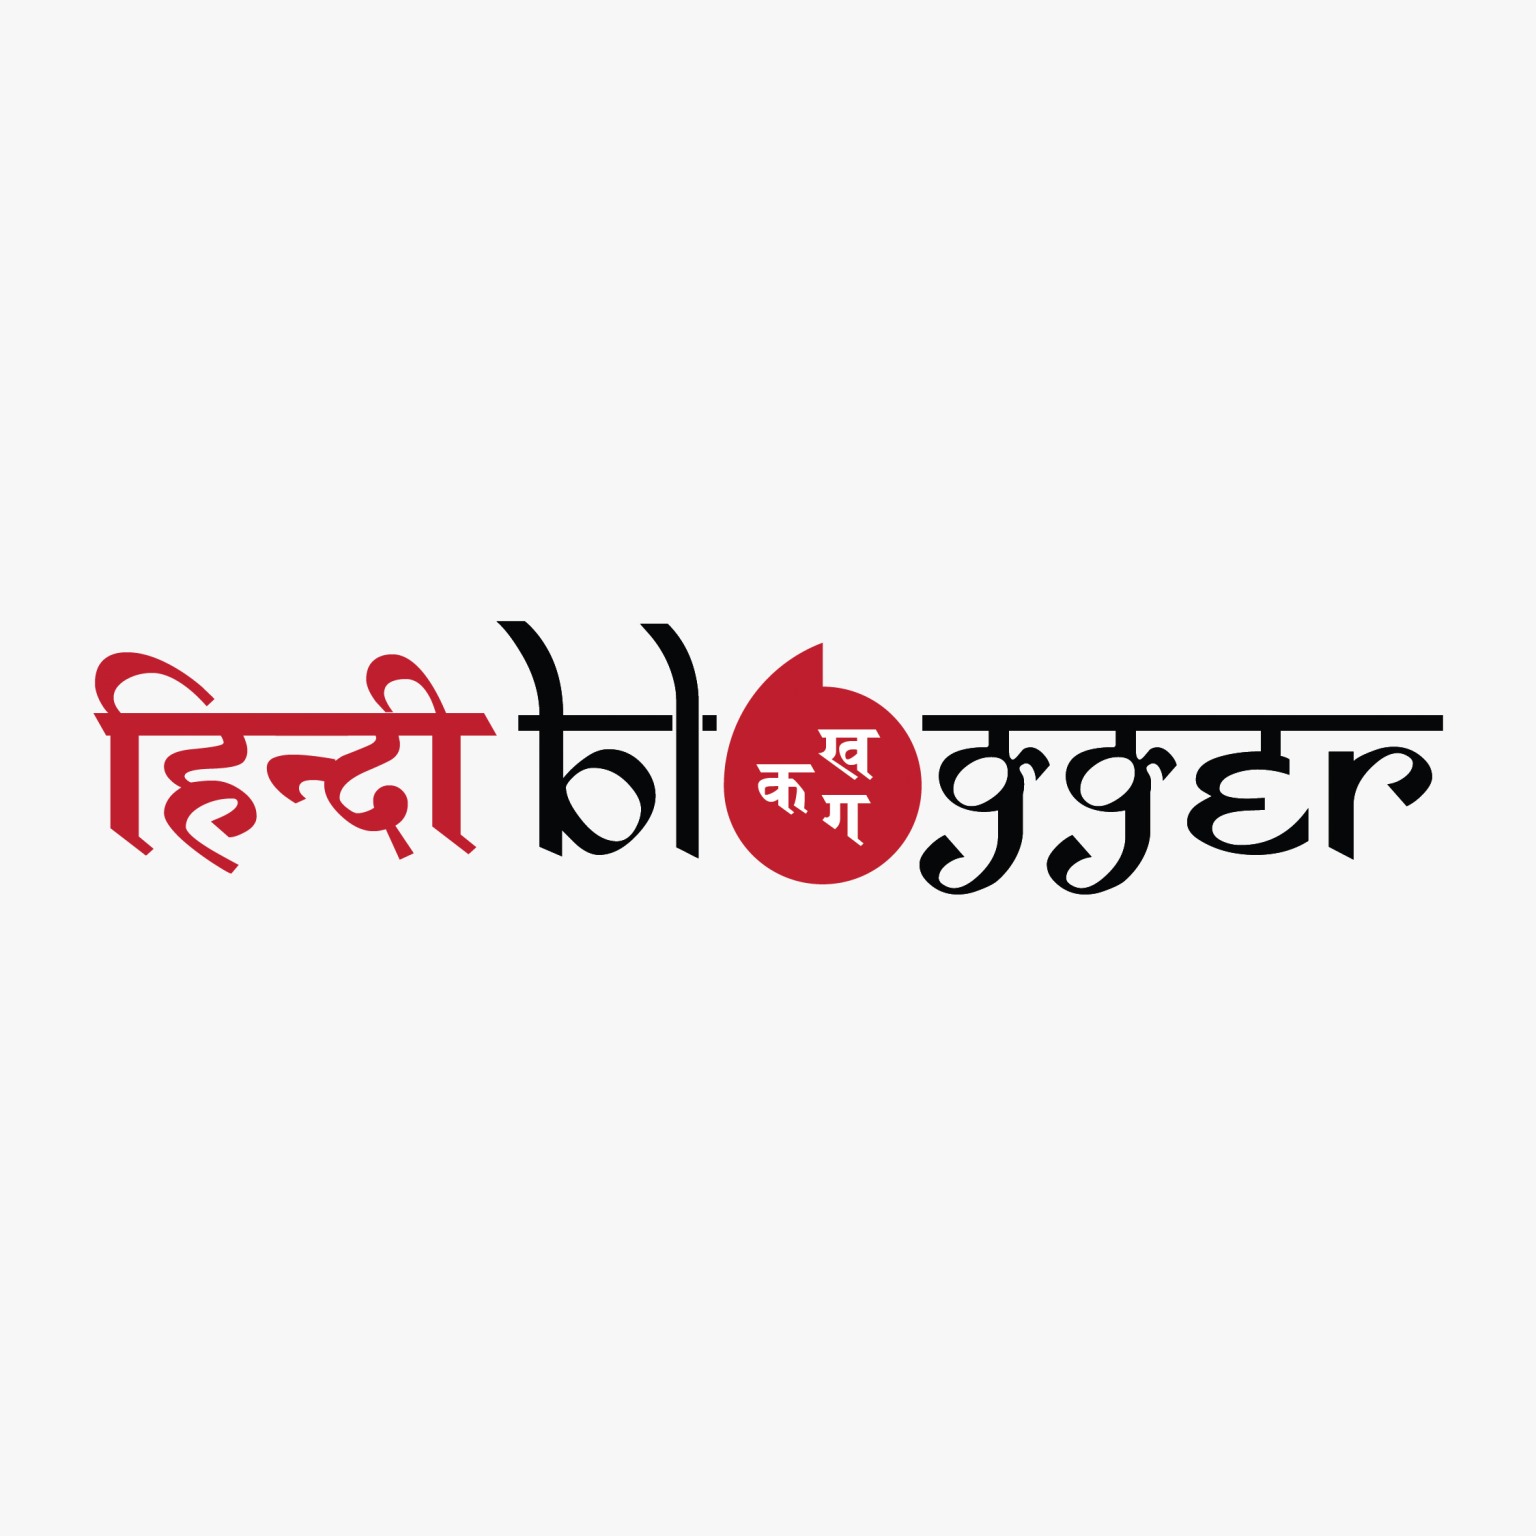 Avatar: hindiletters